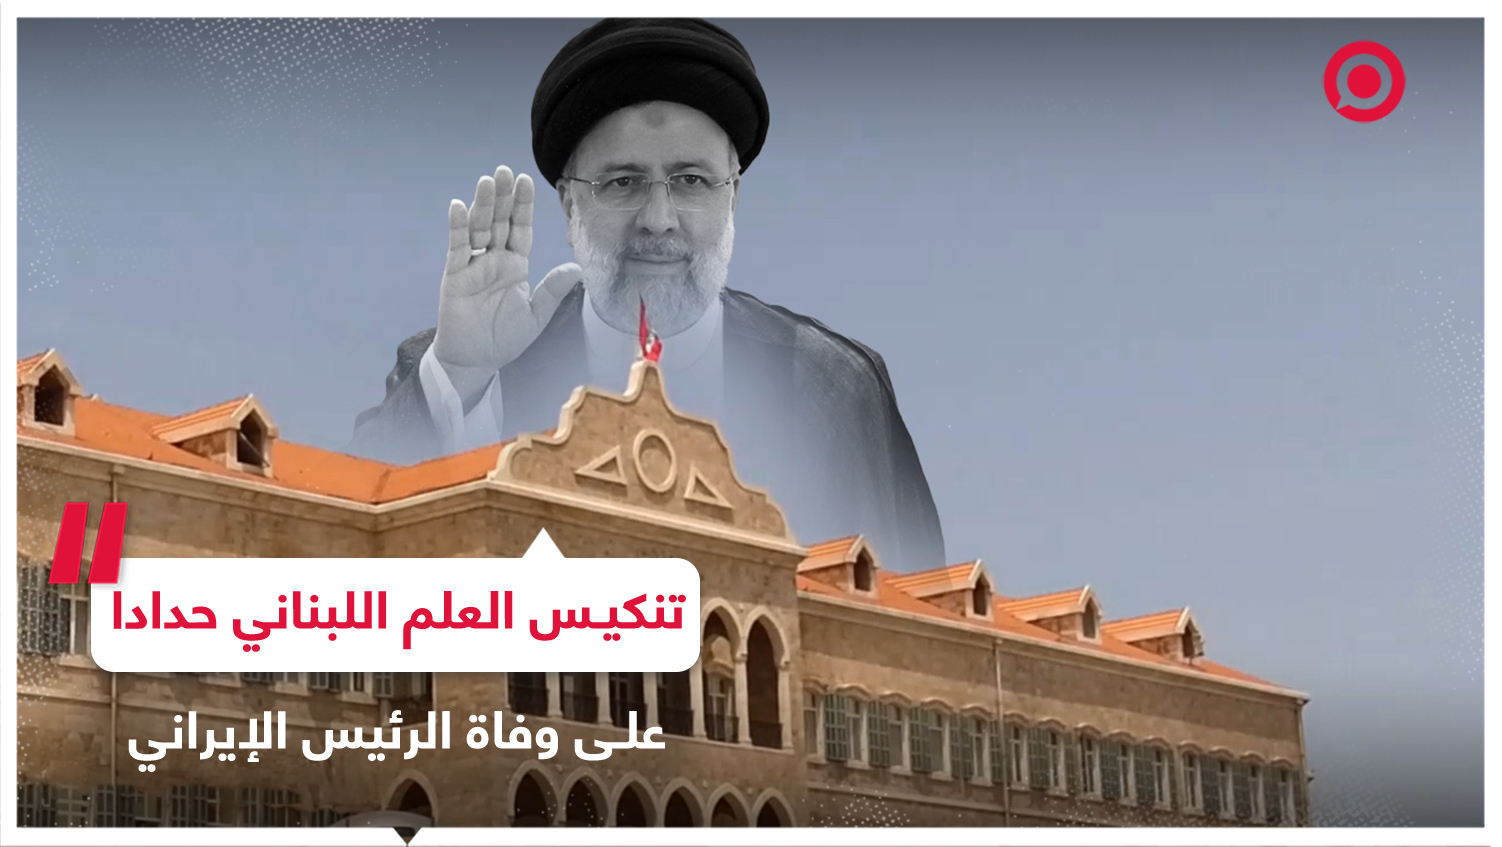 تنكيس العلم اللبناني في السراي الحكومي حدادا على وفاة الرئيس الإيراني